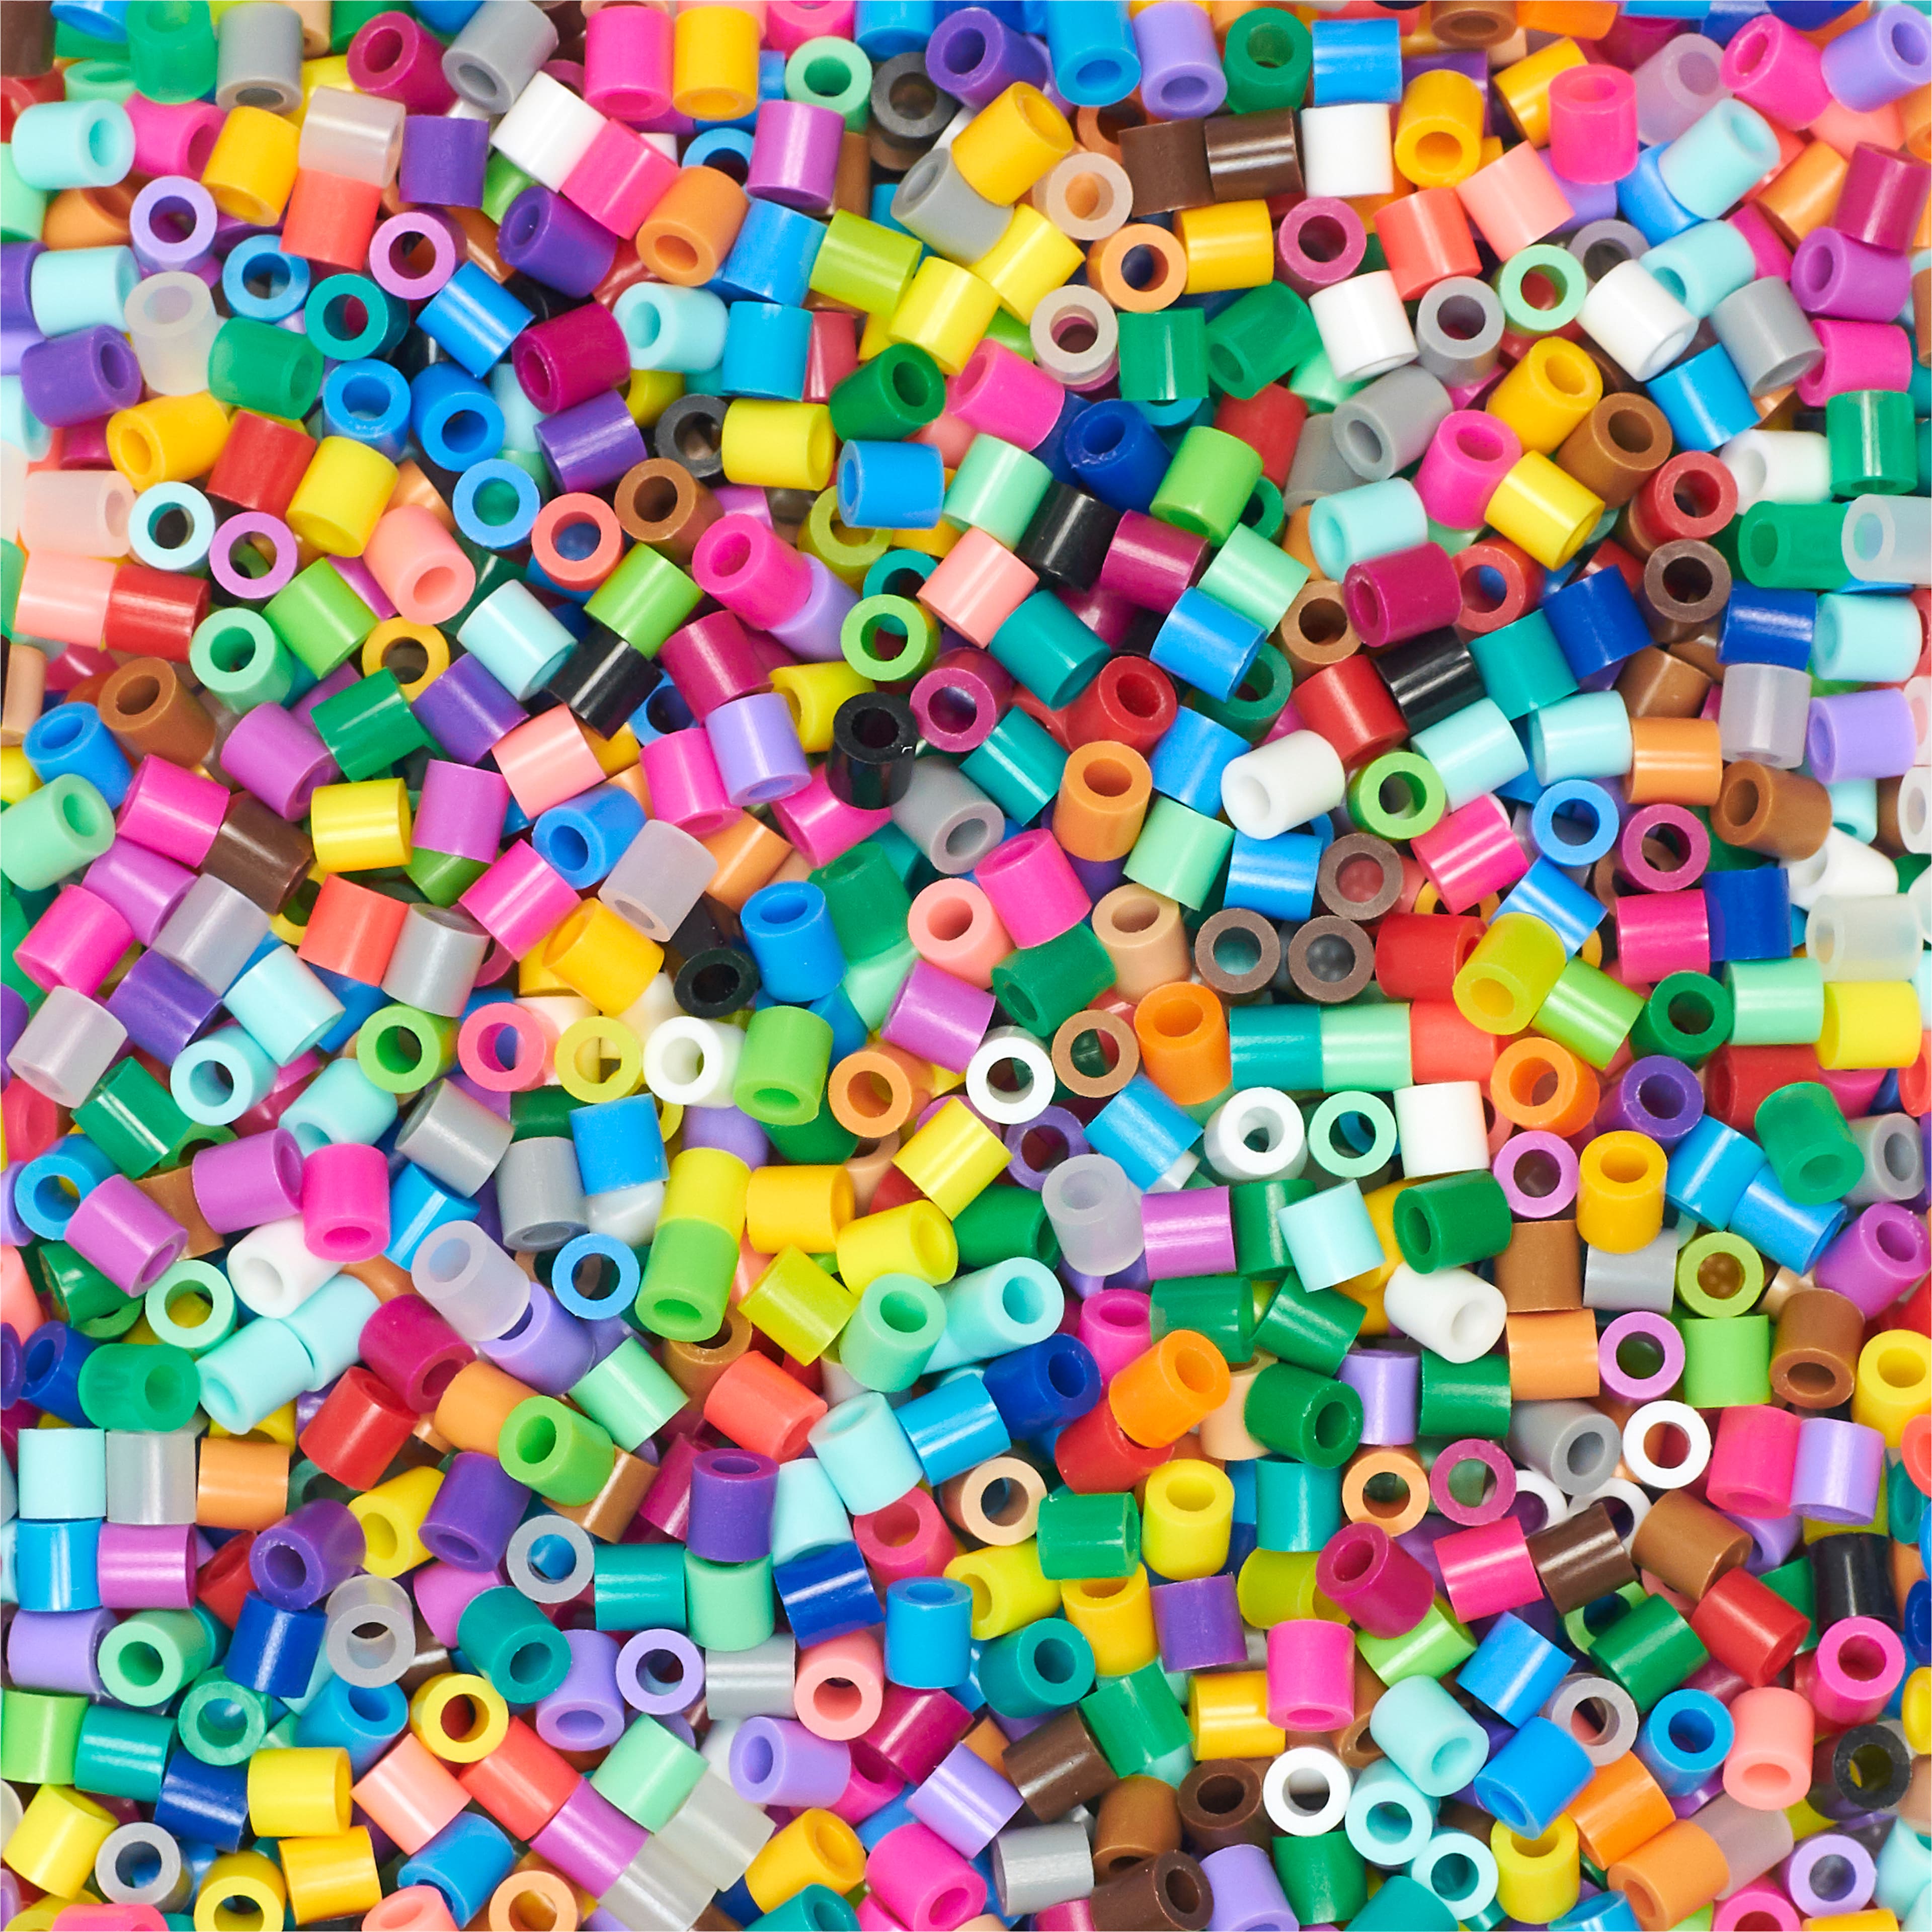 Perler&#xAE; 22,000 Beads Multi-Mix Jar